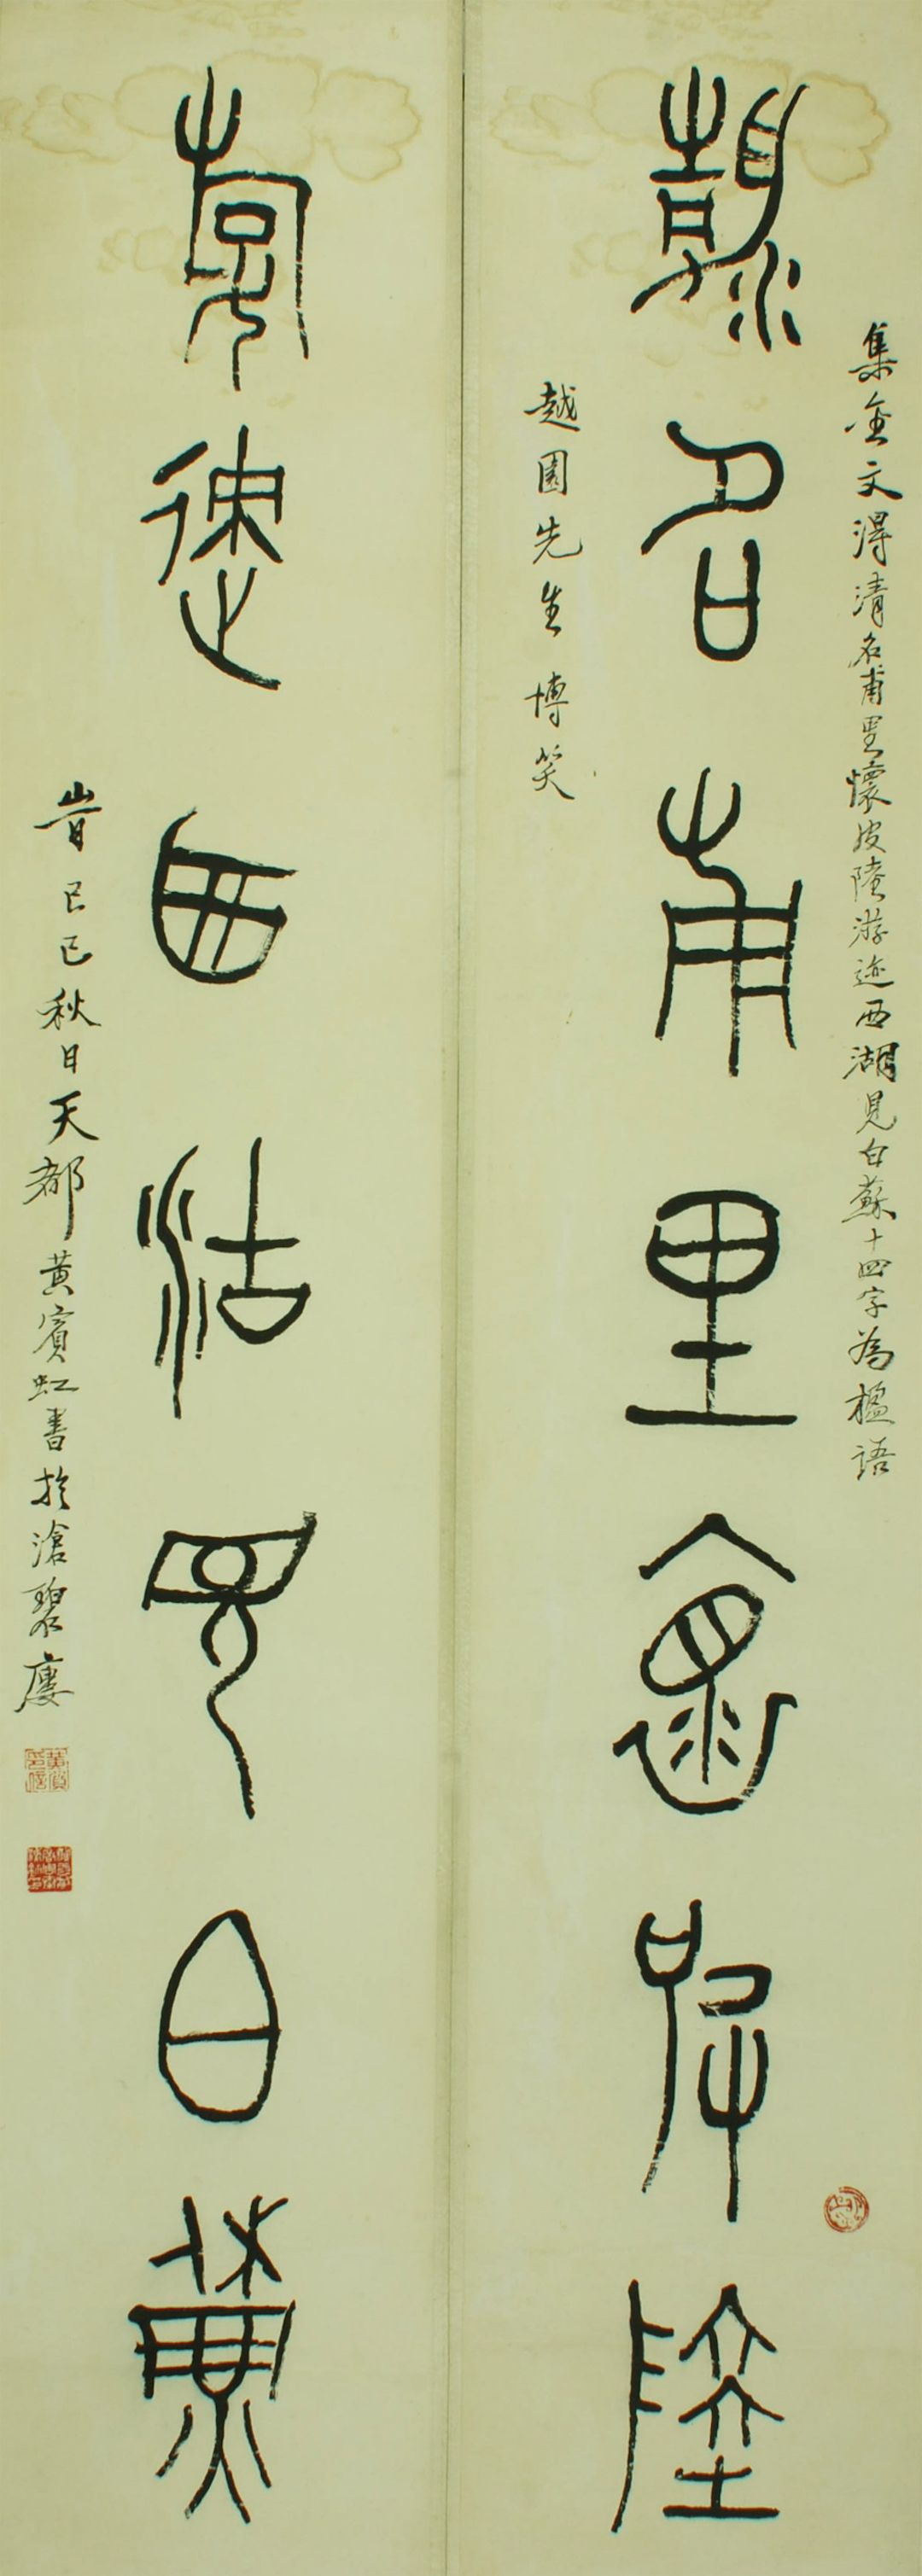 1929年黄宾虹集金文“清名游迹”七言联